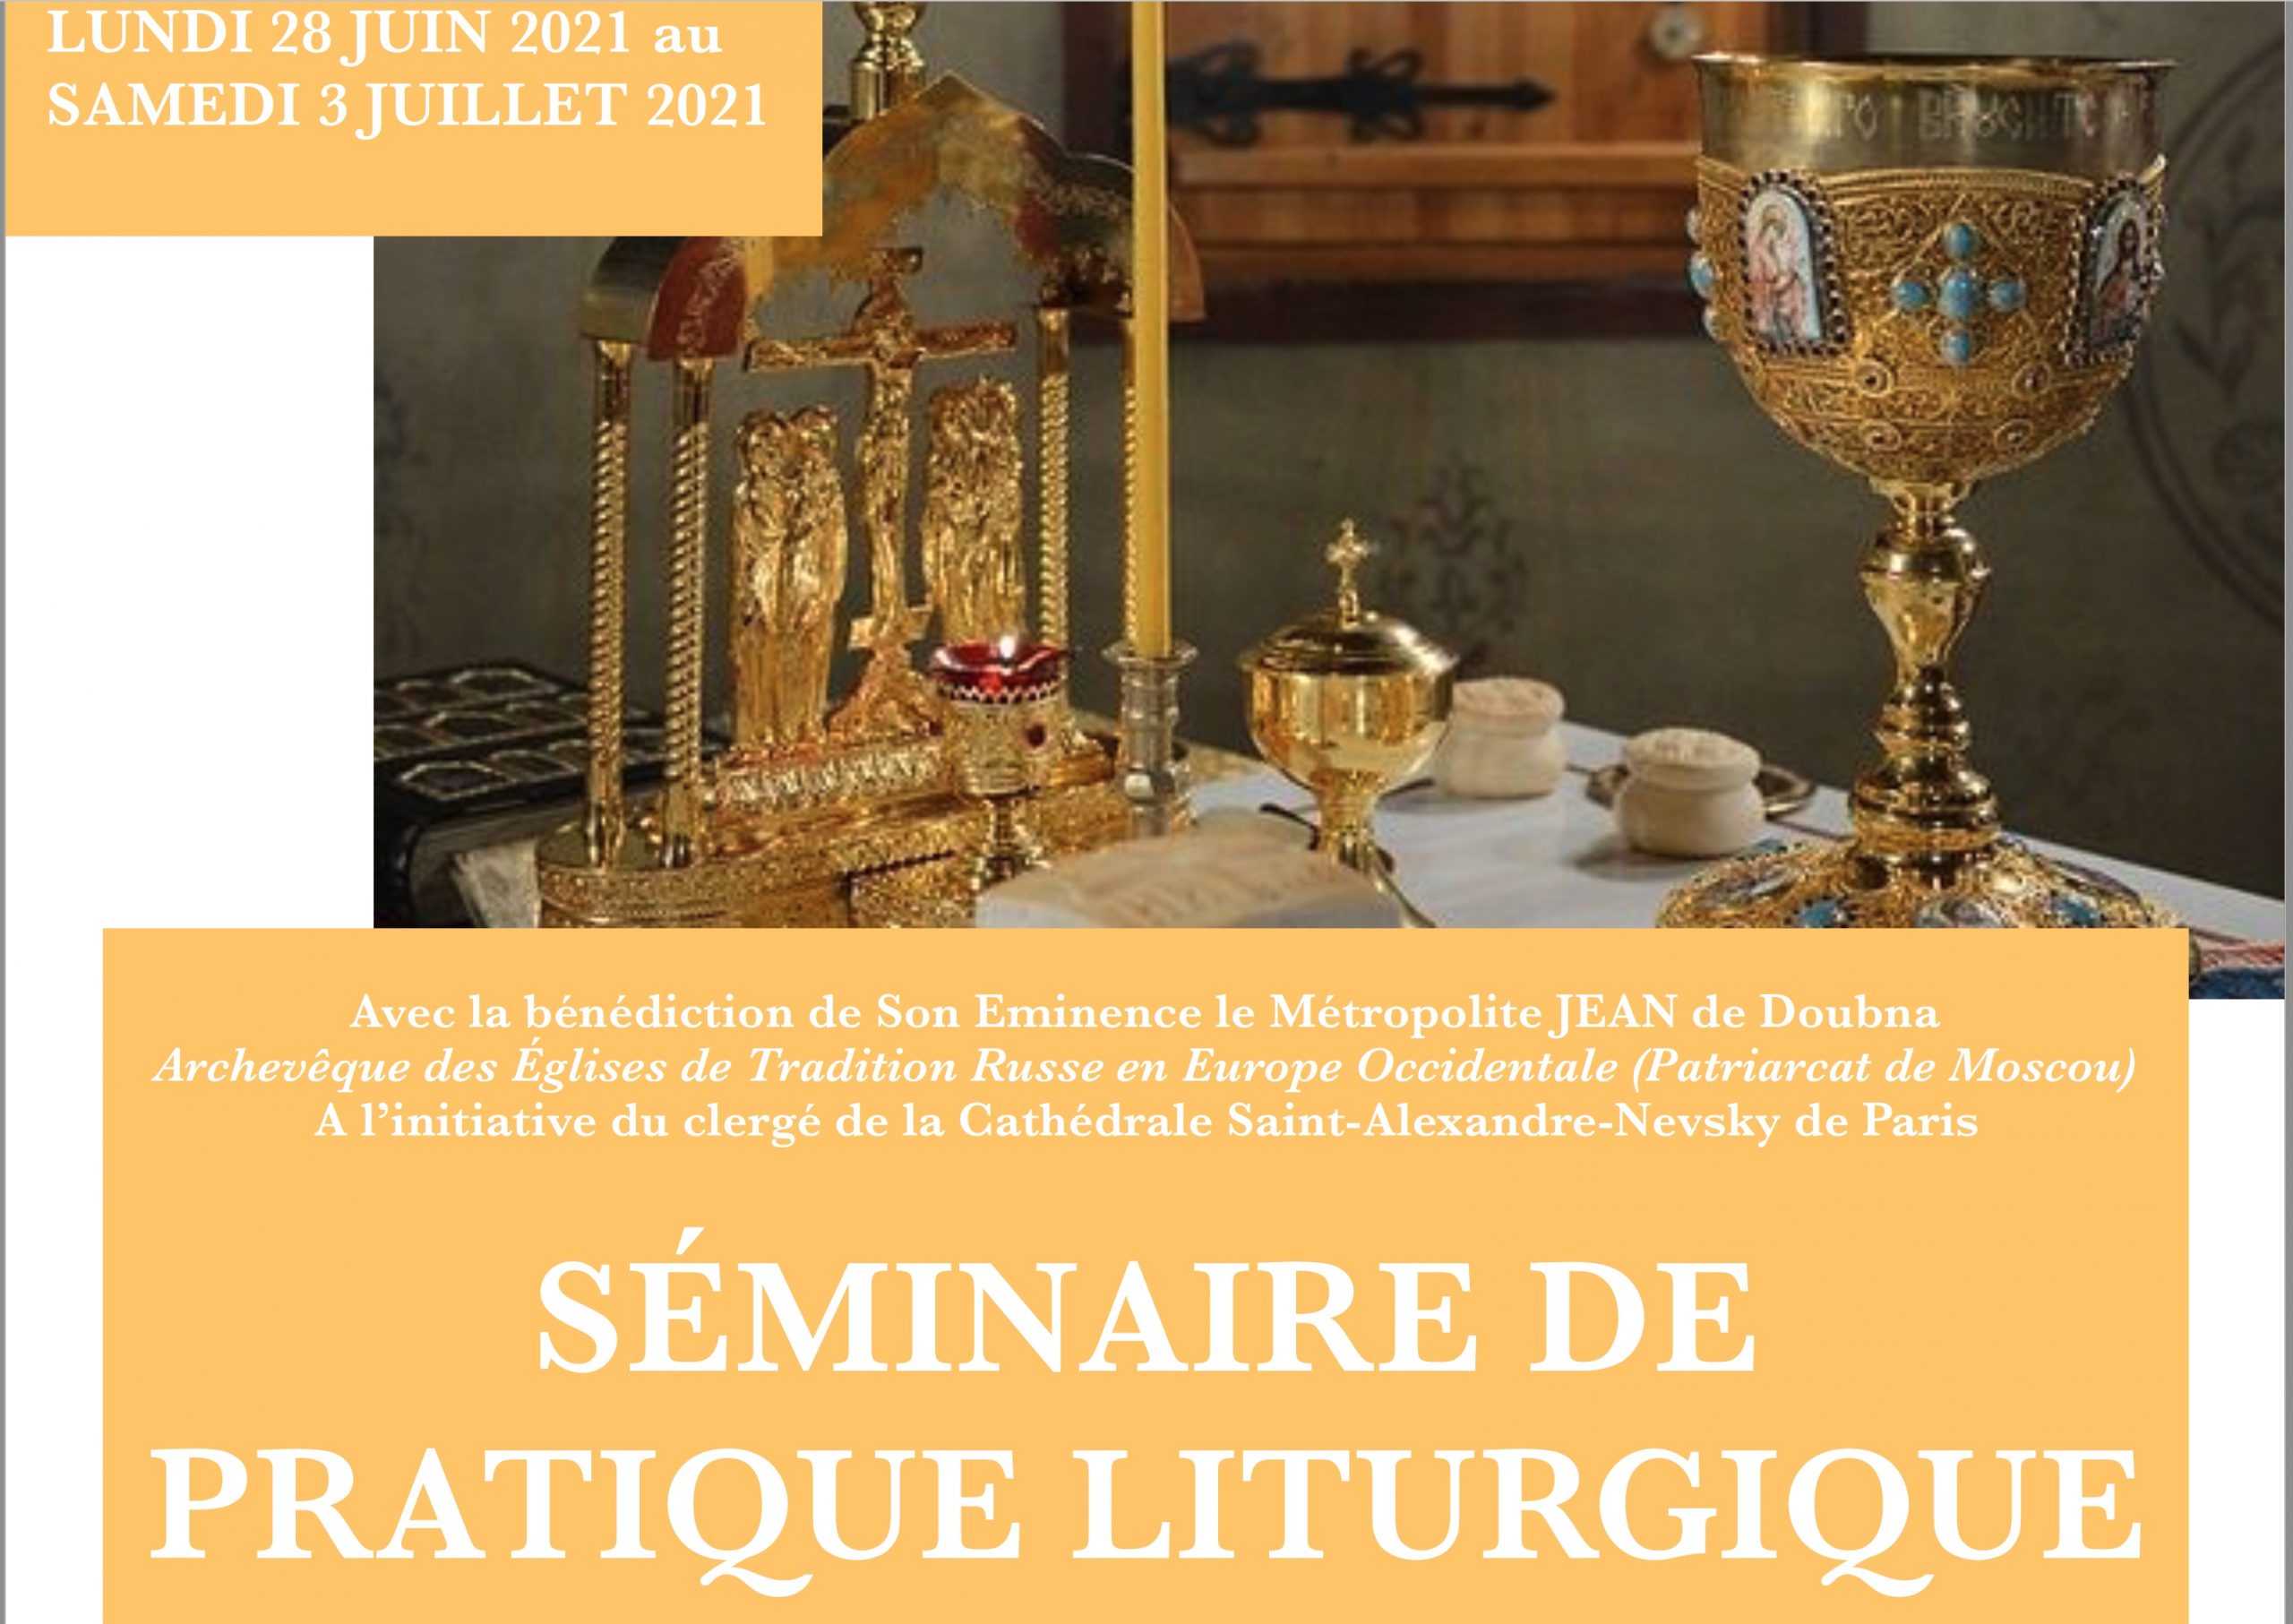 Un séminaire de pratique liturgique est organisé à la colline saint-serge du 28 juin au 3 juillet